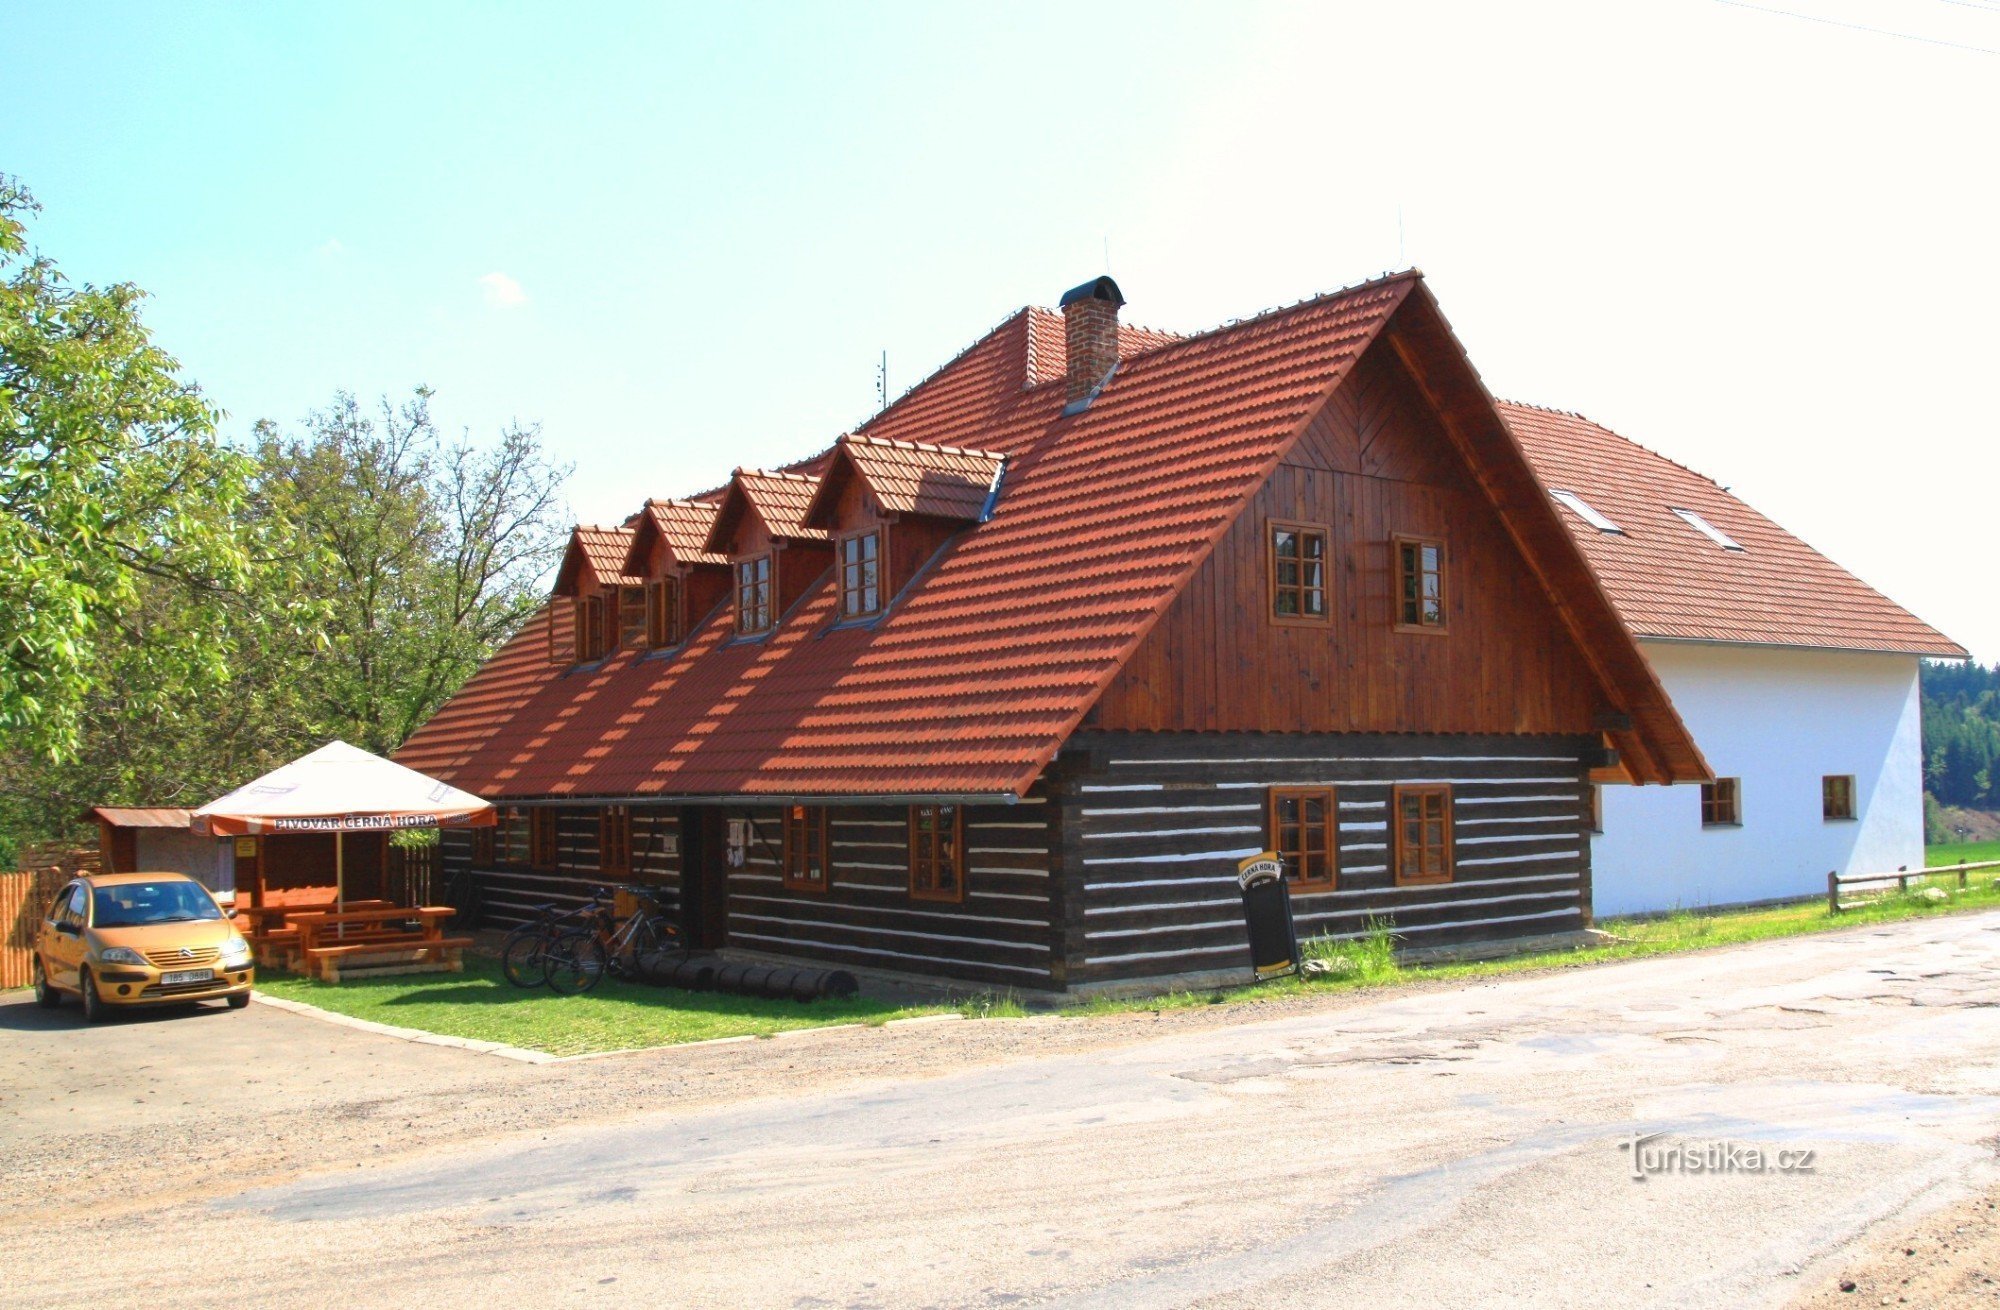 ホルニ スムルジョフ - 民俗建築博物館